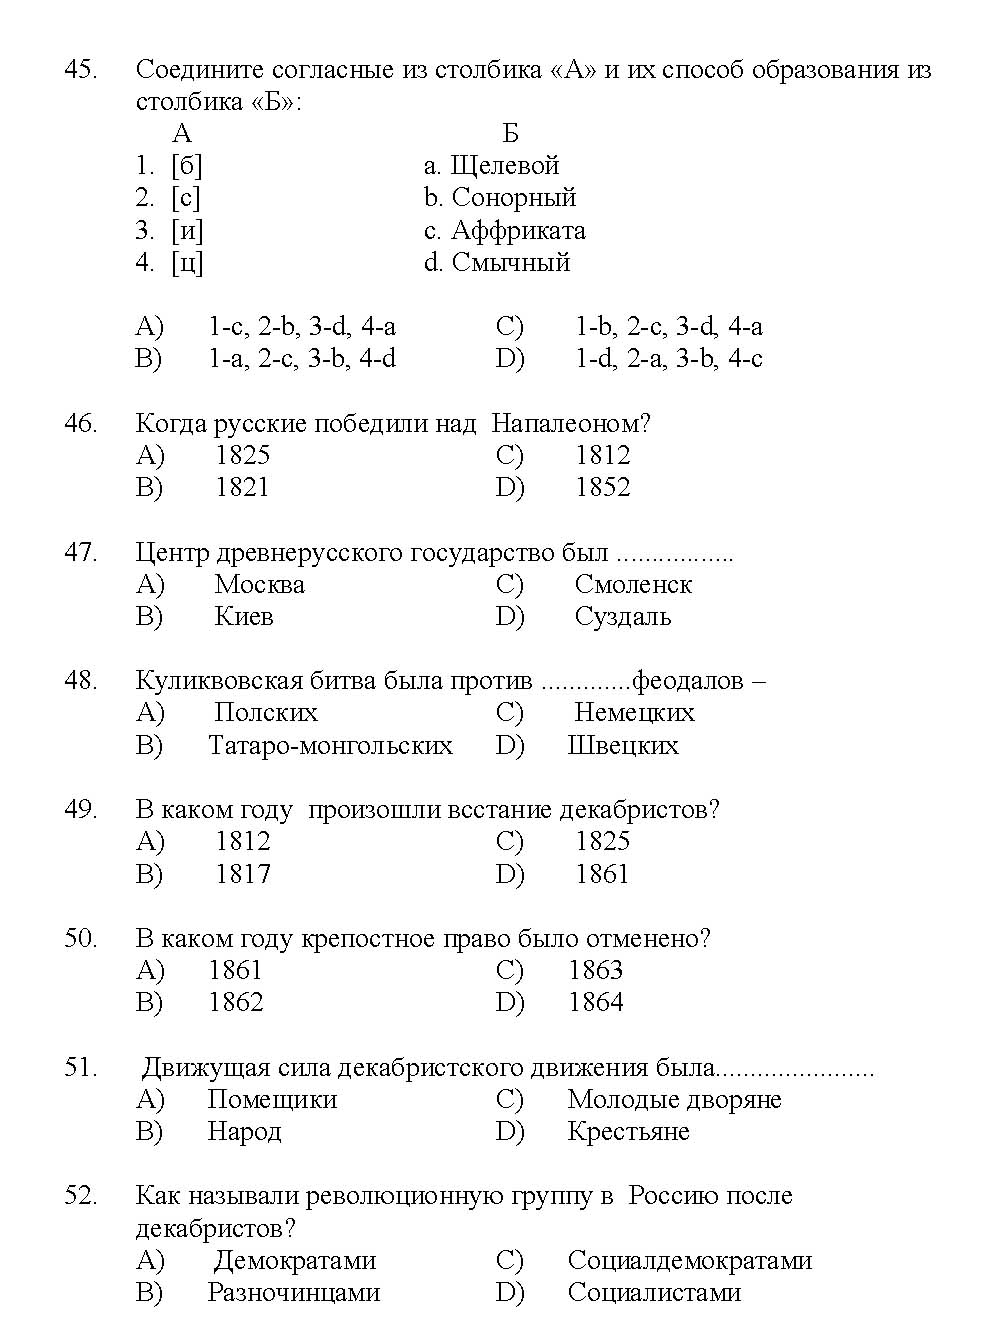 Kerala SET Russian Exam 2017 Question Code 17227 A 9